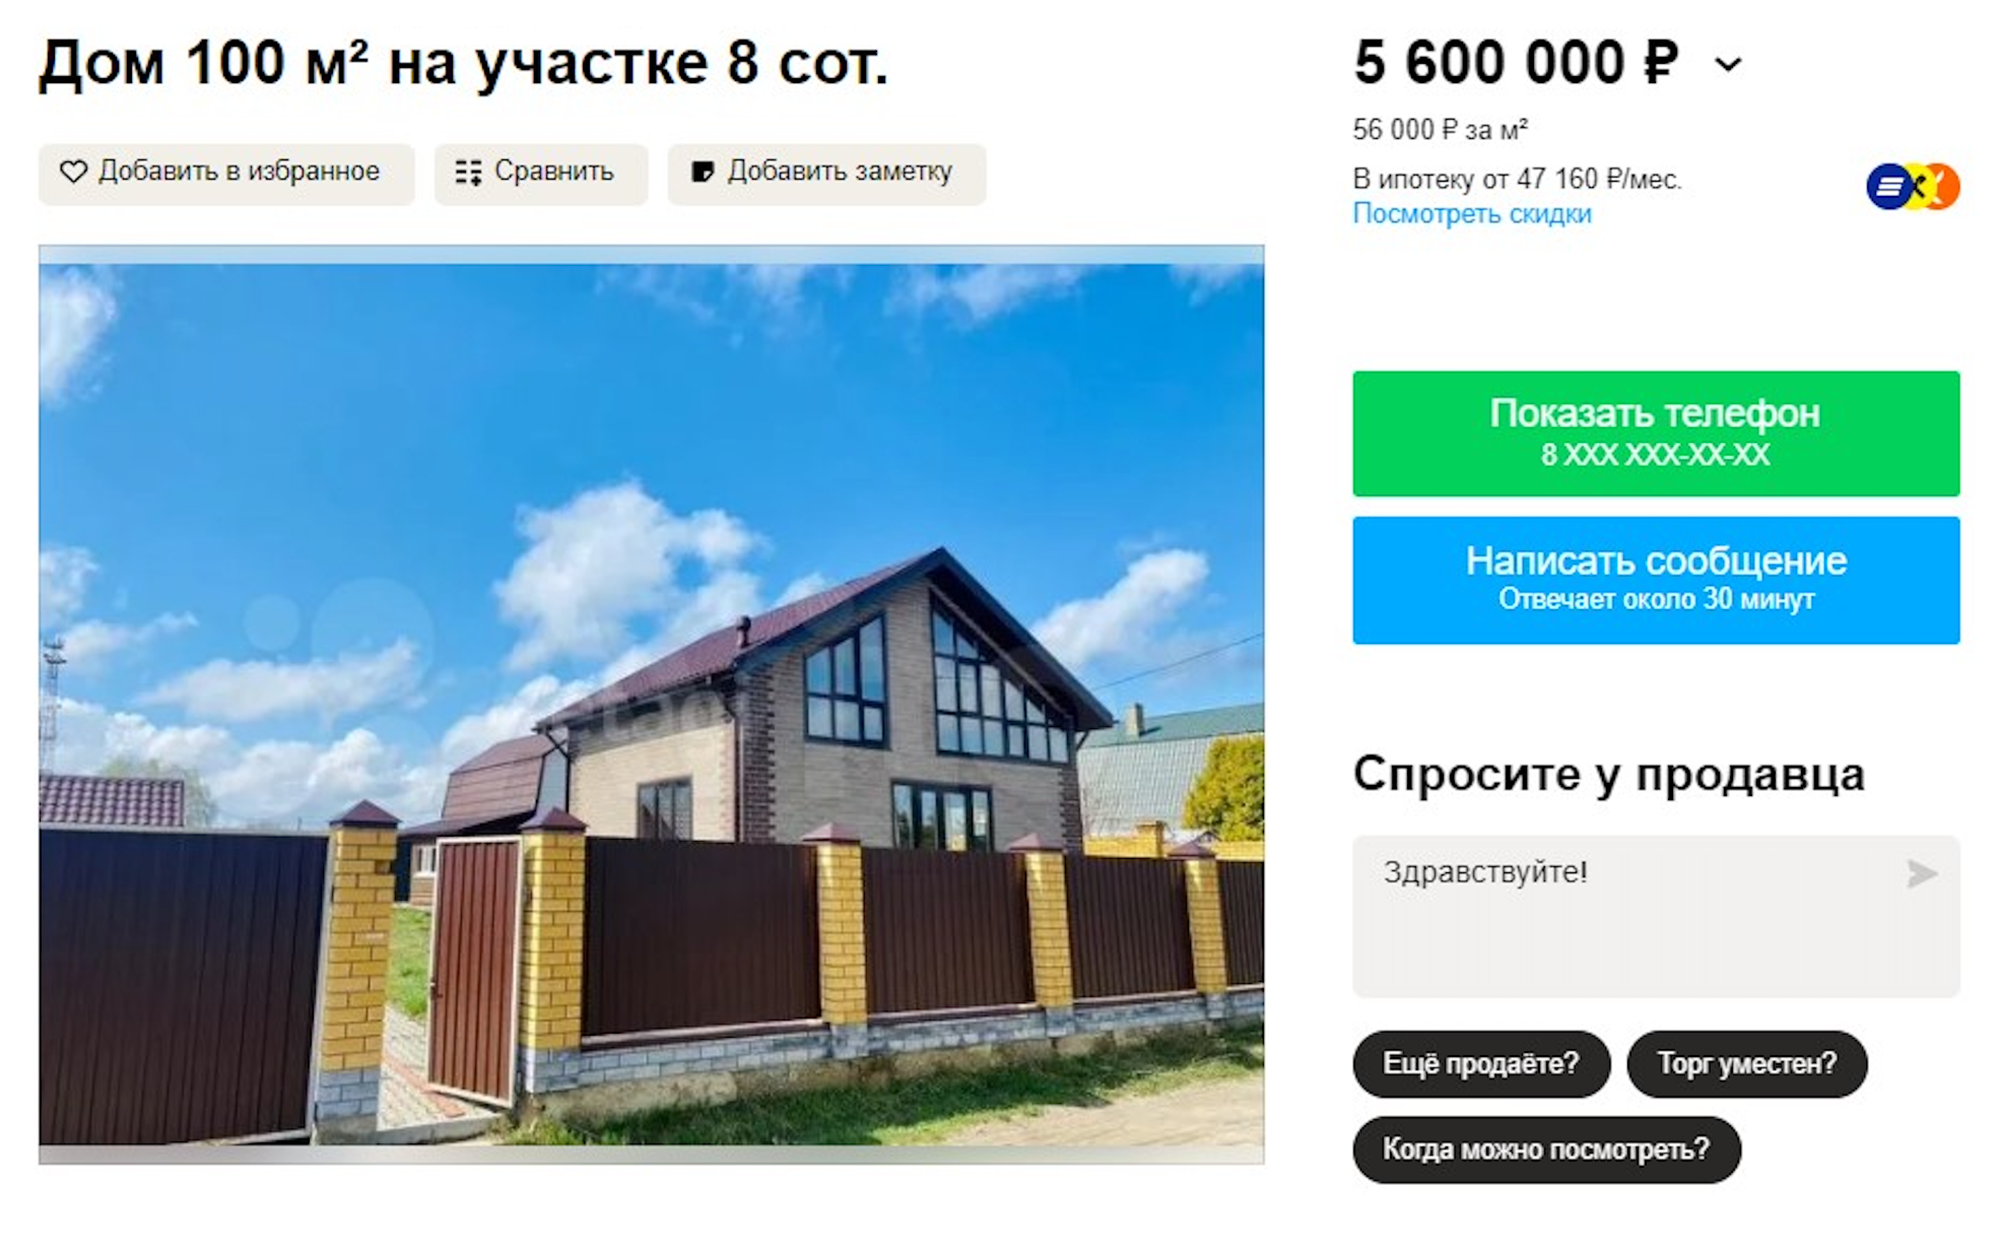 Коттедж меньшей площади в этом же поселке, но без обременений, стоит почти в два раза дороже. Источник: avito.ru